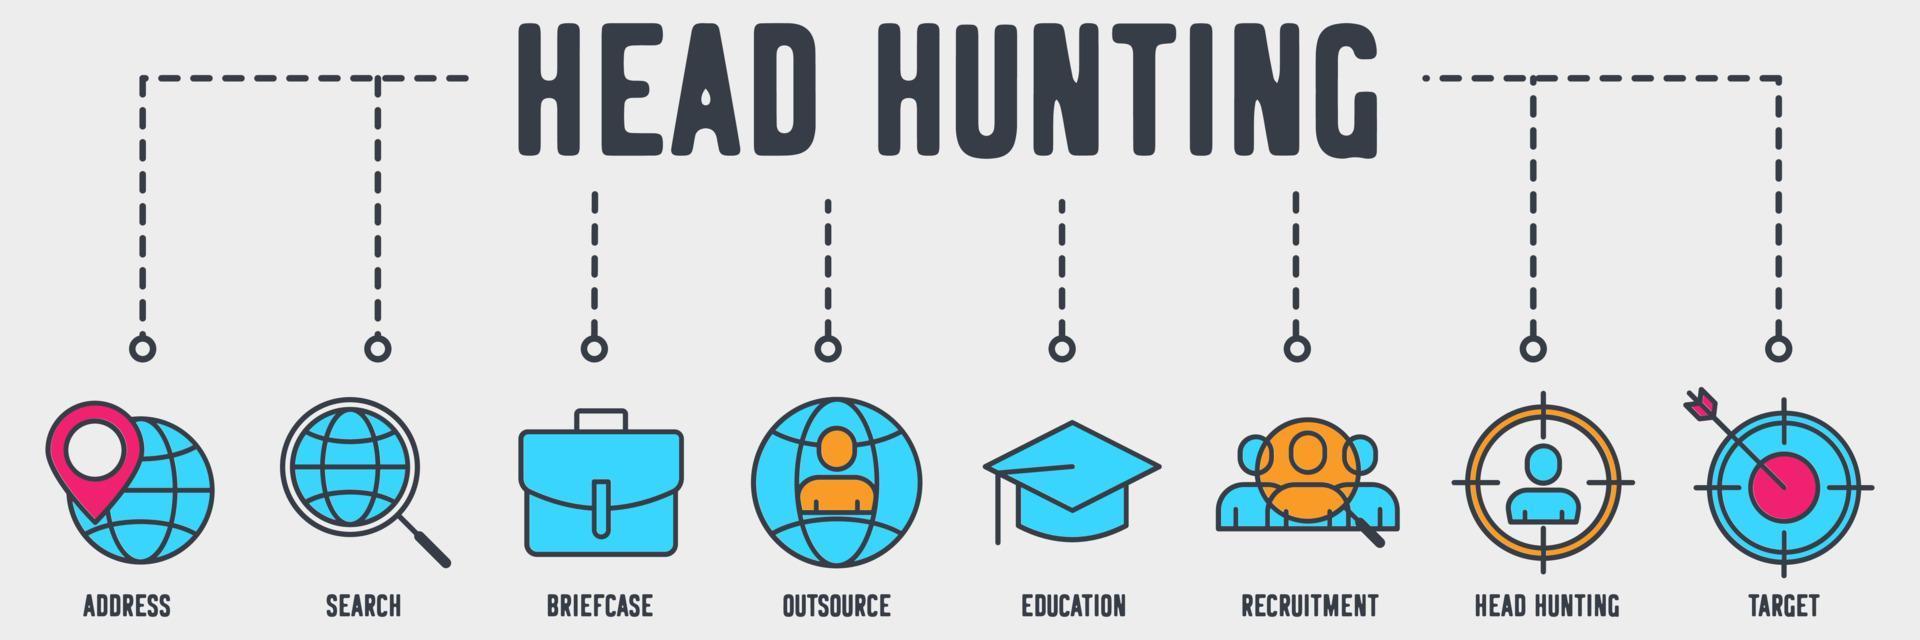 icono web de banner de caza de cabezas. dirección, búsqueda, maletín, subcontratación, educación, reclutamiento, caza de cabezas, concepto de ilustración de vector objetivo.